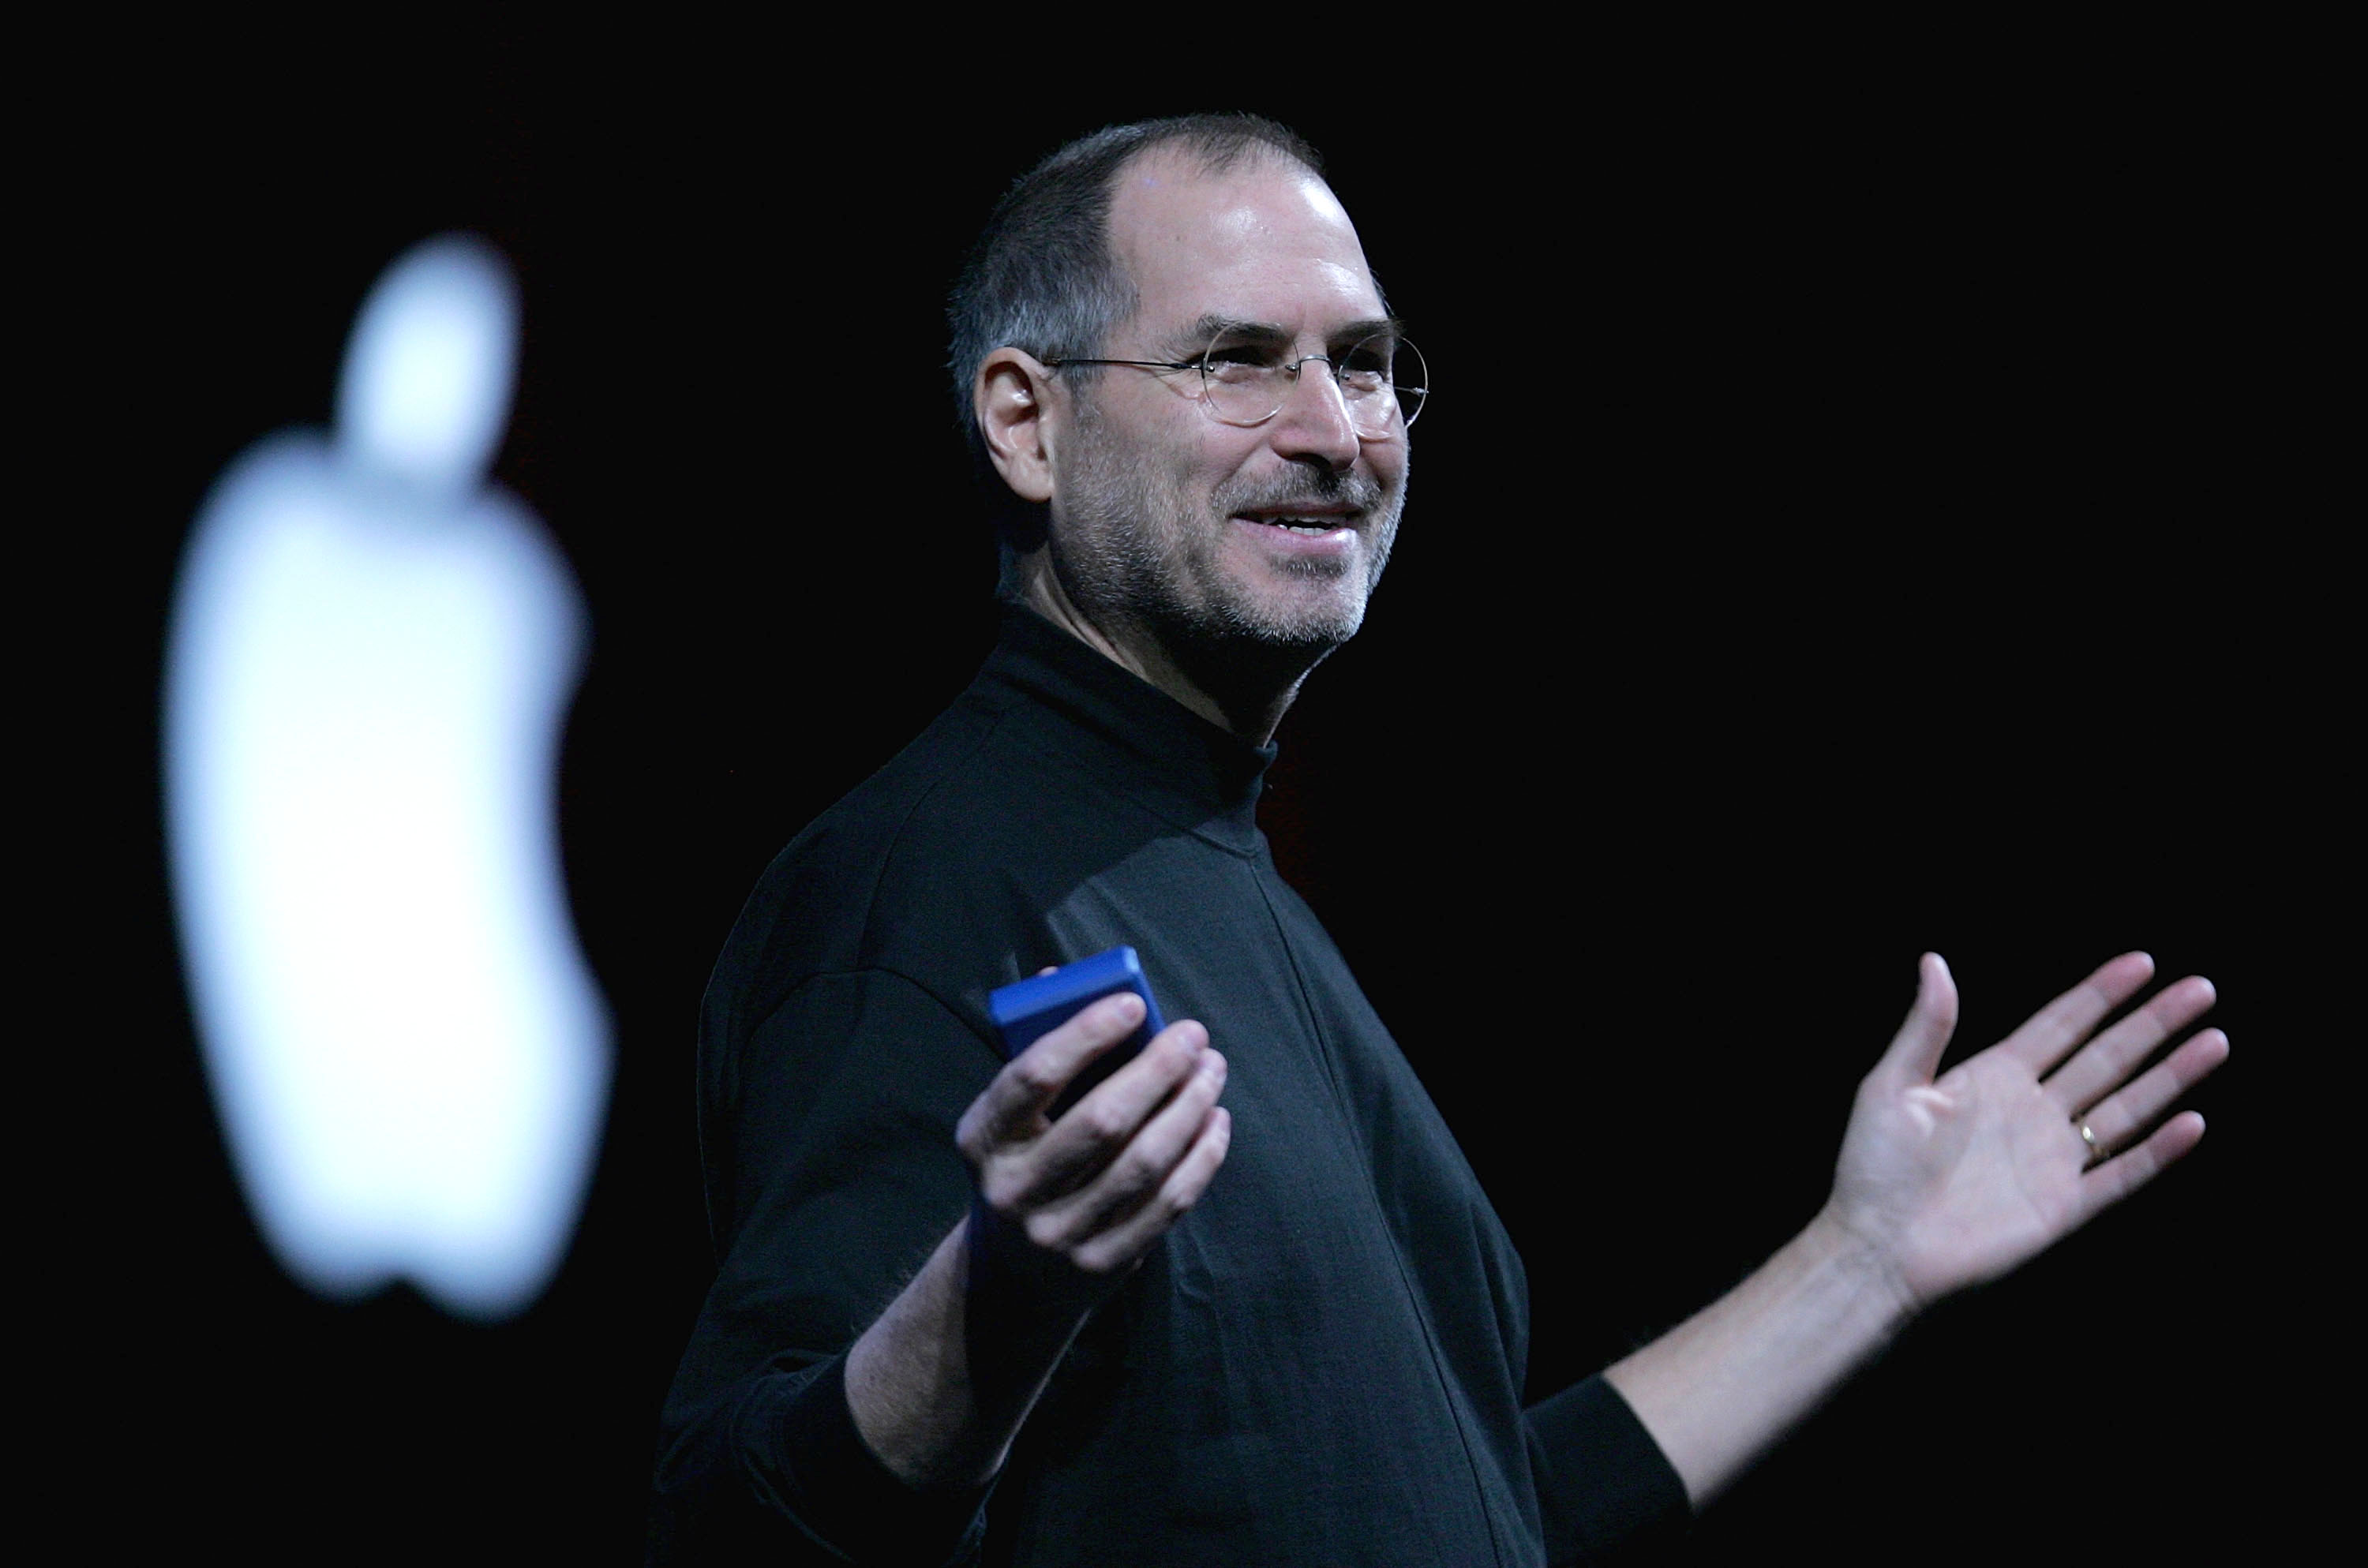 Steve Jobs in 2005.